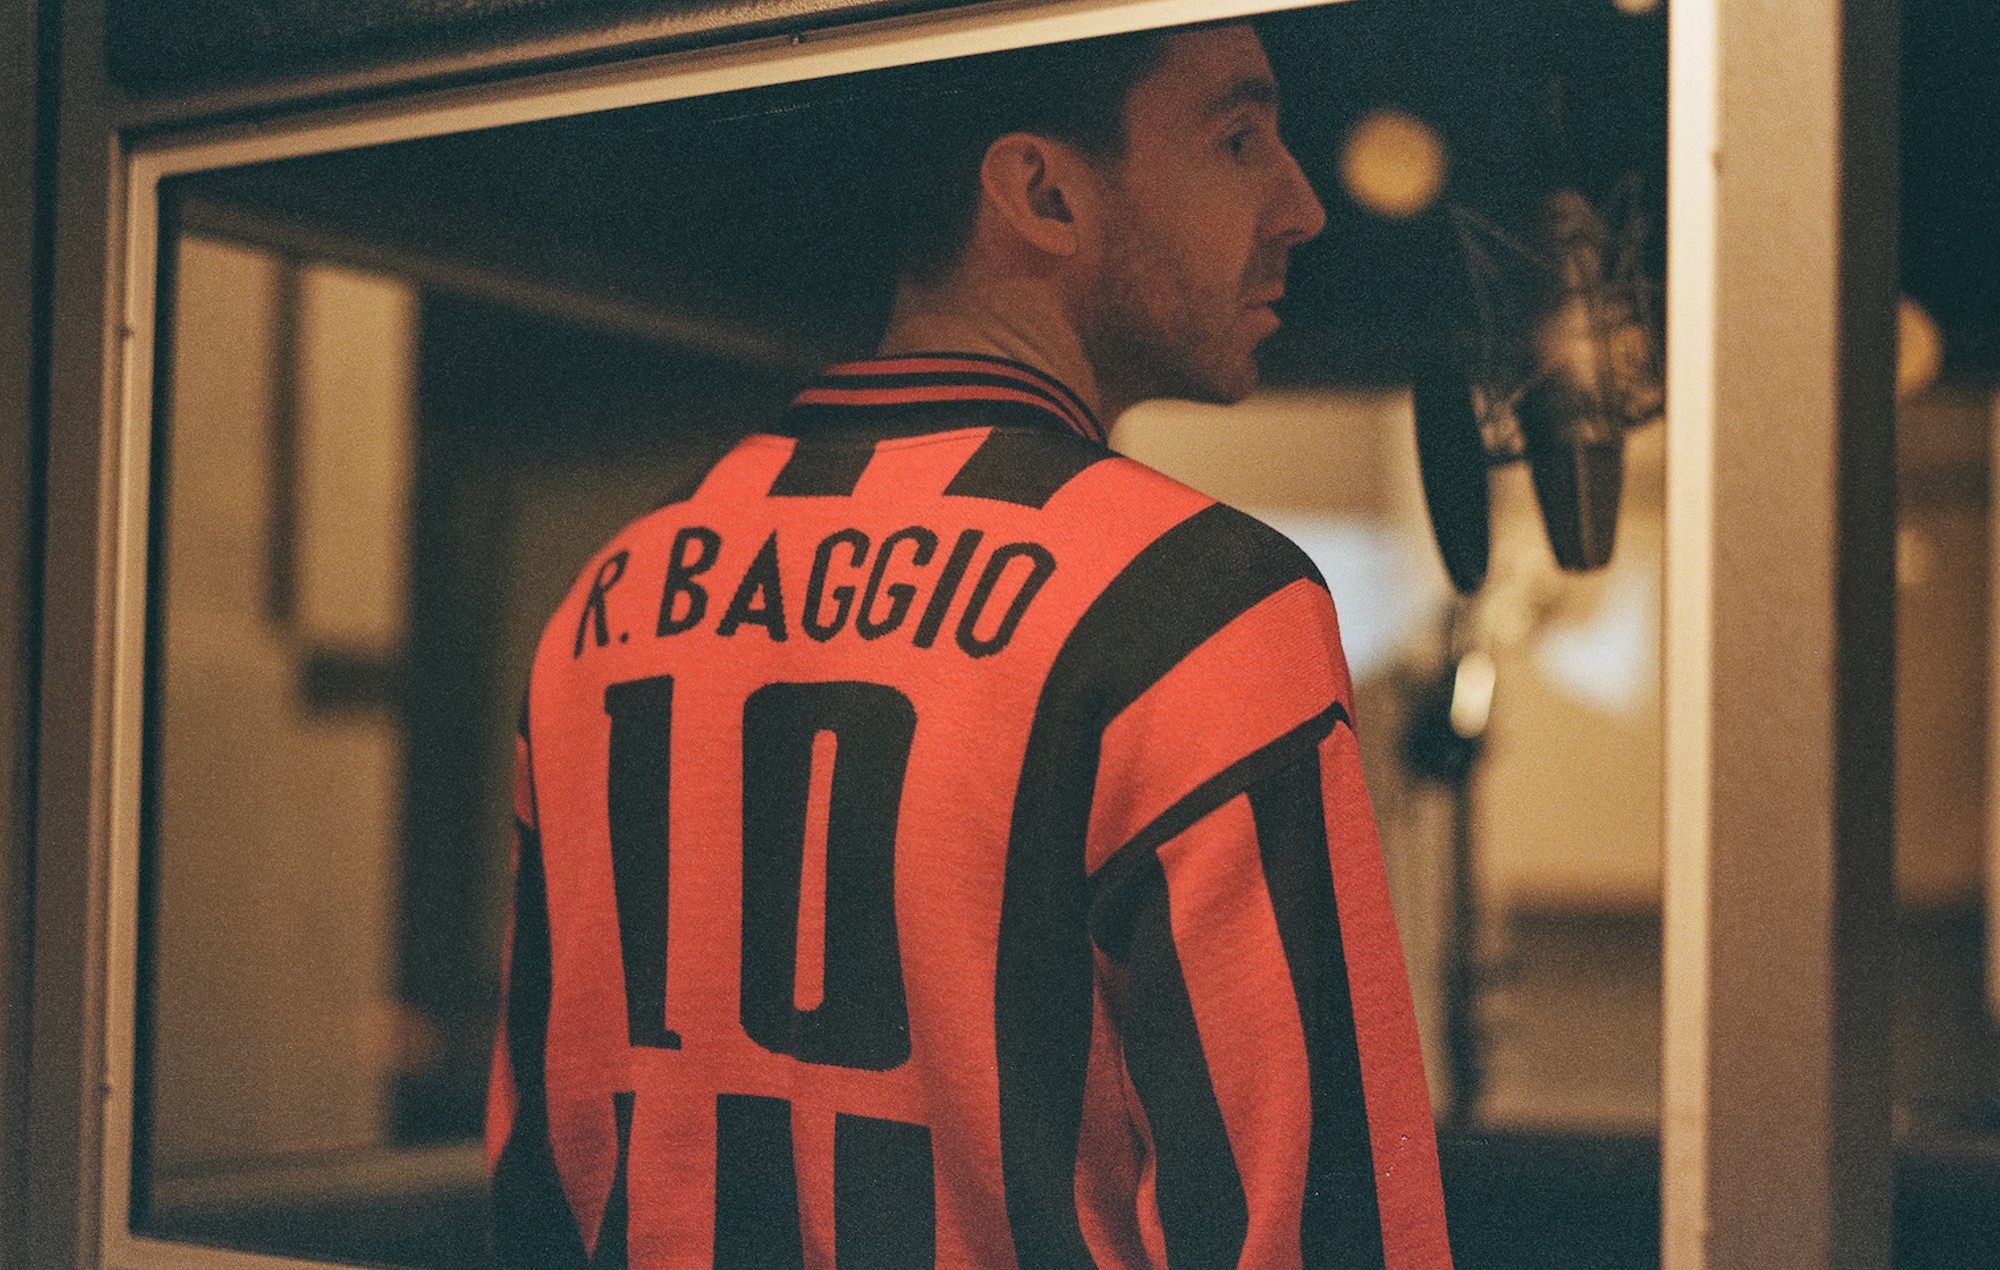 Майлз Кейн отдает дань уважения легендарному итальянскому футболисту новым хитом Baggio.